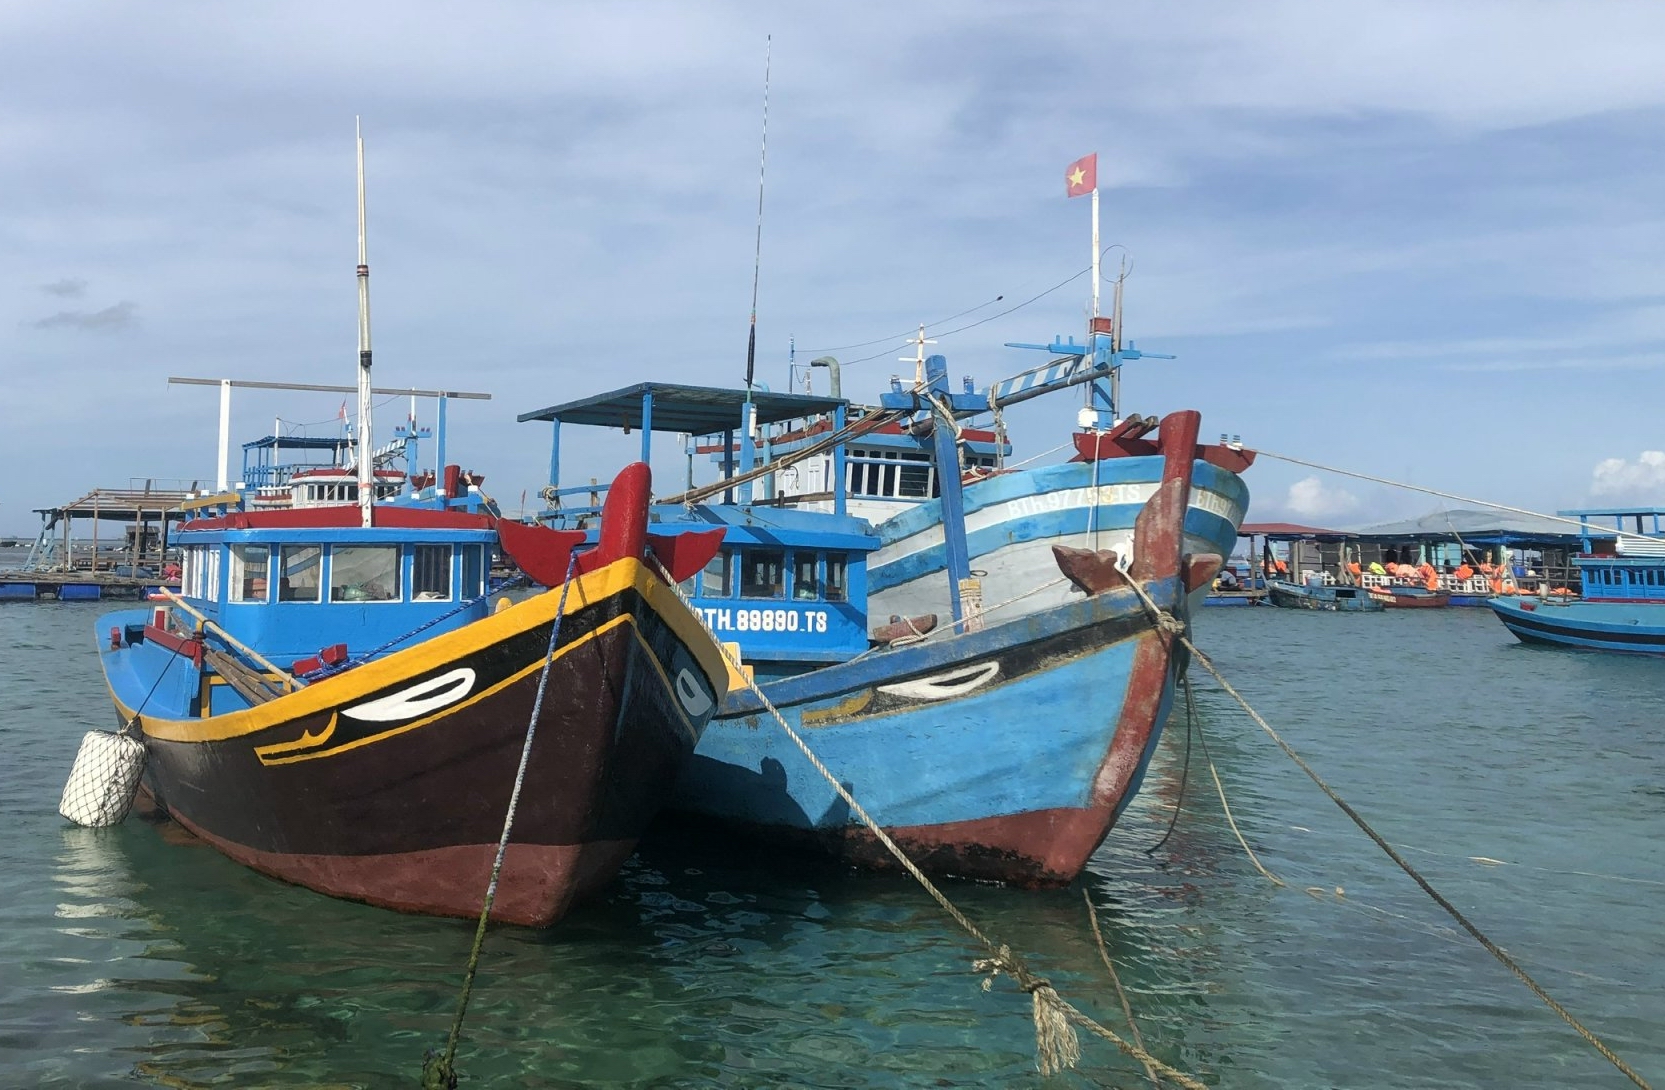 Thanh tra Ủy ban Châu Âu sẽ kiểm tra chống khai thác hải sản bất hợp pháp ở Bình Thuận - Ảnh 1.